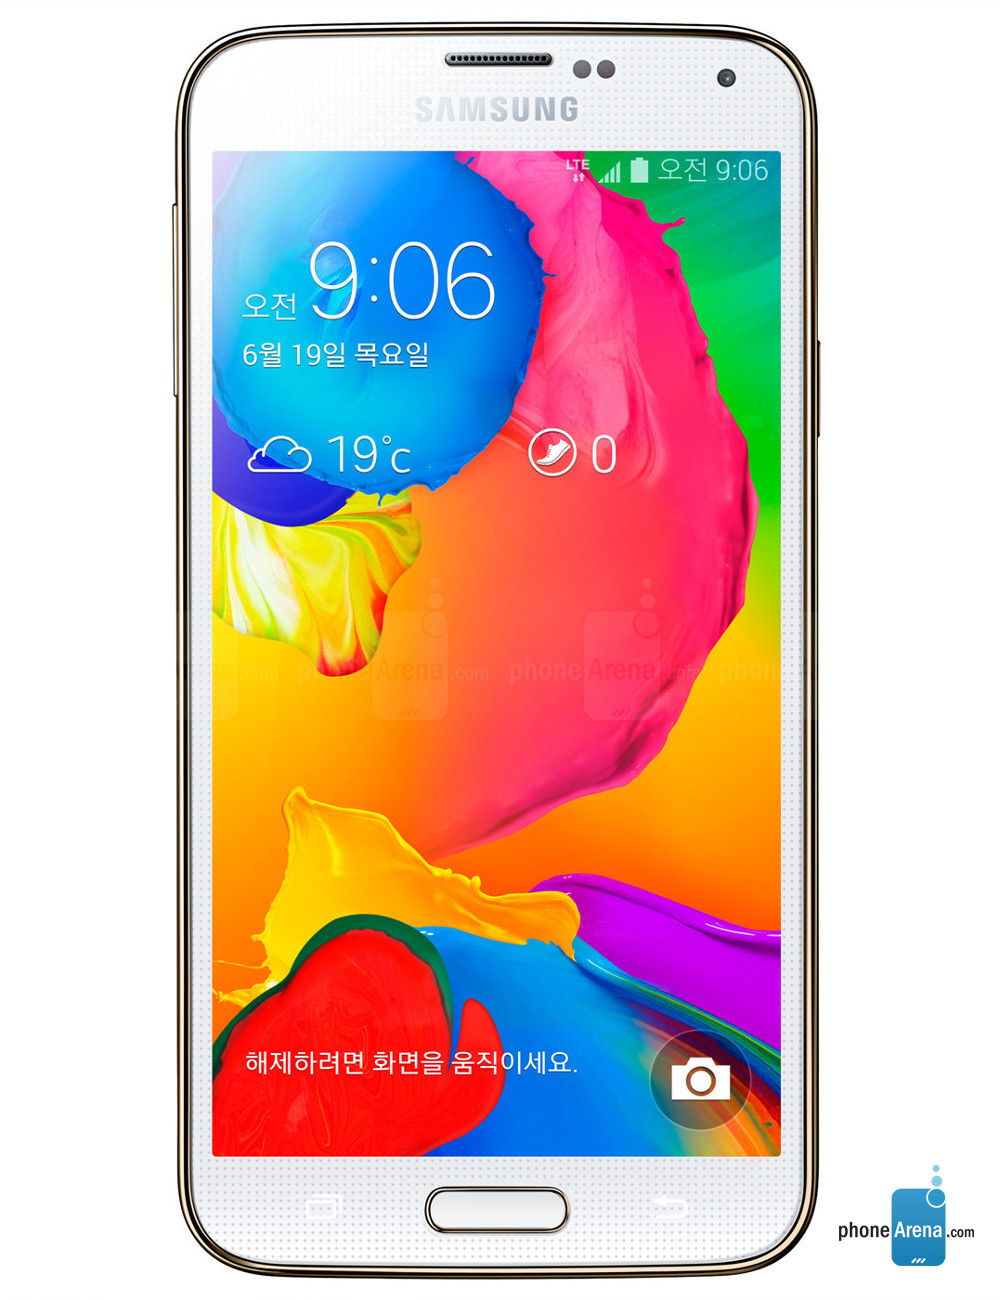 Galaxy S5 LTE-A, phiên bản ra mắt sau Galaxy S5, là thiết bị sở hữu cấu hình cao cấp: màn hình Super AMOLED 5.1 inch độ phân giải 1440 x 2560 pixel, chống nước, bụi tiêu chuẩn IP67, chip Qualcomm Snapdragon 805 tốc độ 2.5GHz, RAM 3GB. Mẫu máy này còn dùng máy ảnh ISOCELL 16MP, cảm biến vân tay, máy đo nhịp tim, pin 2.800mAh. Điều đáng buồn là máy chỉ bán tại Hàn Quốc.